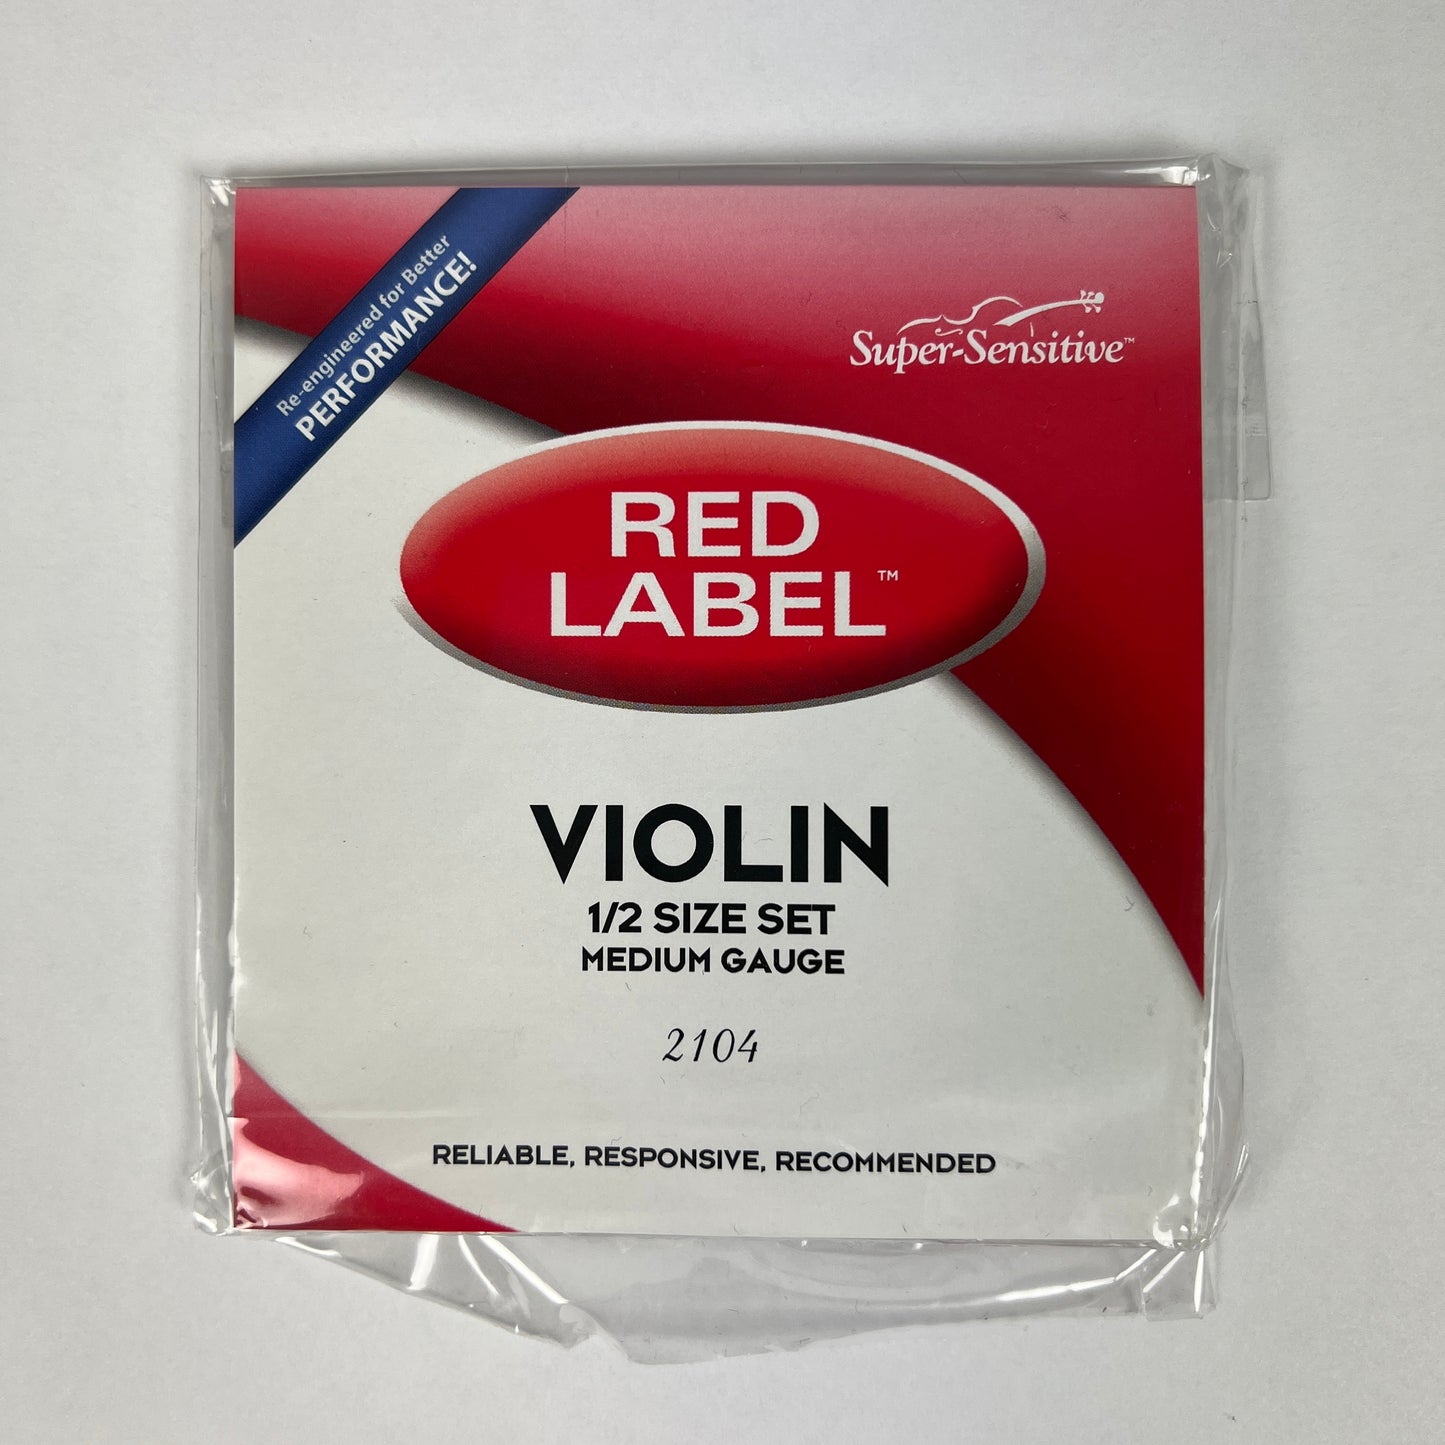 Super-Sensitive Red Label 1/2 Size Violin String Set, Medium Gauge